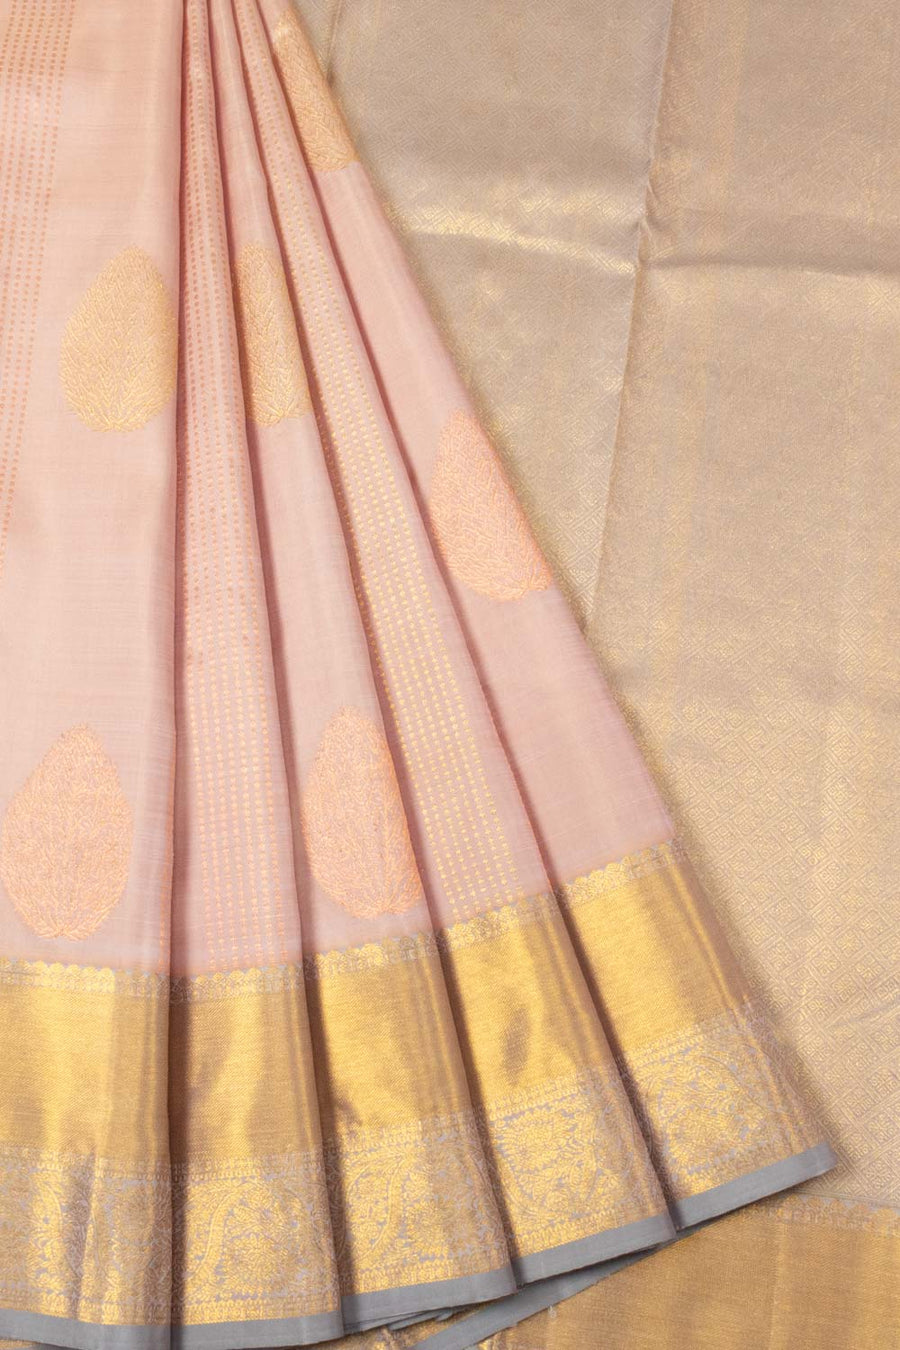 Peach Handloom Kanjivaram Silk Saree- Avishya